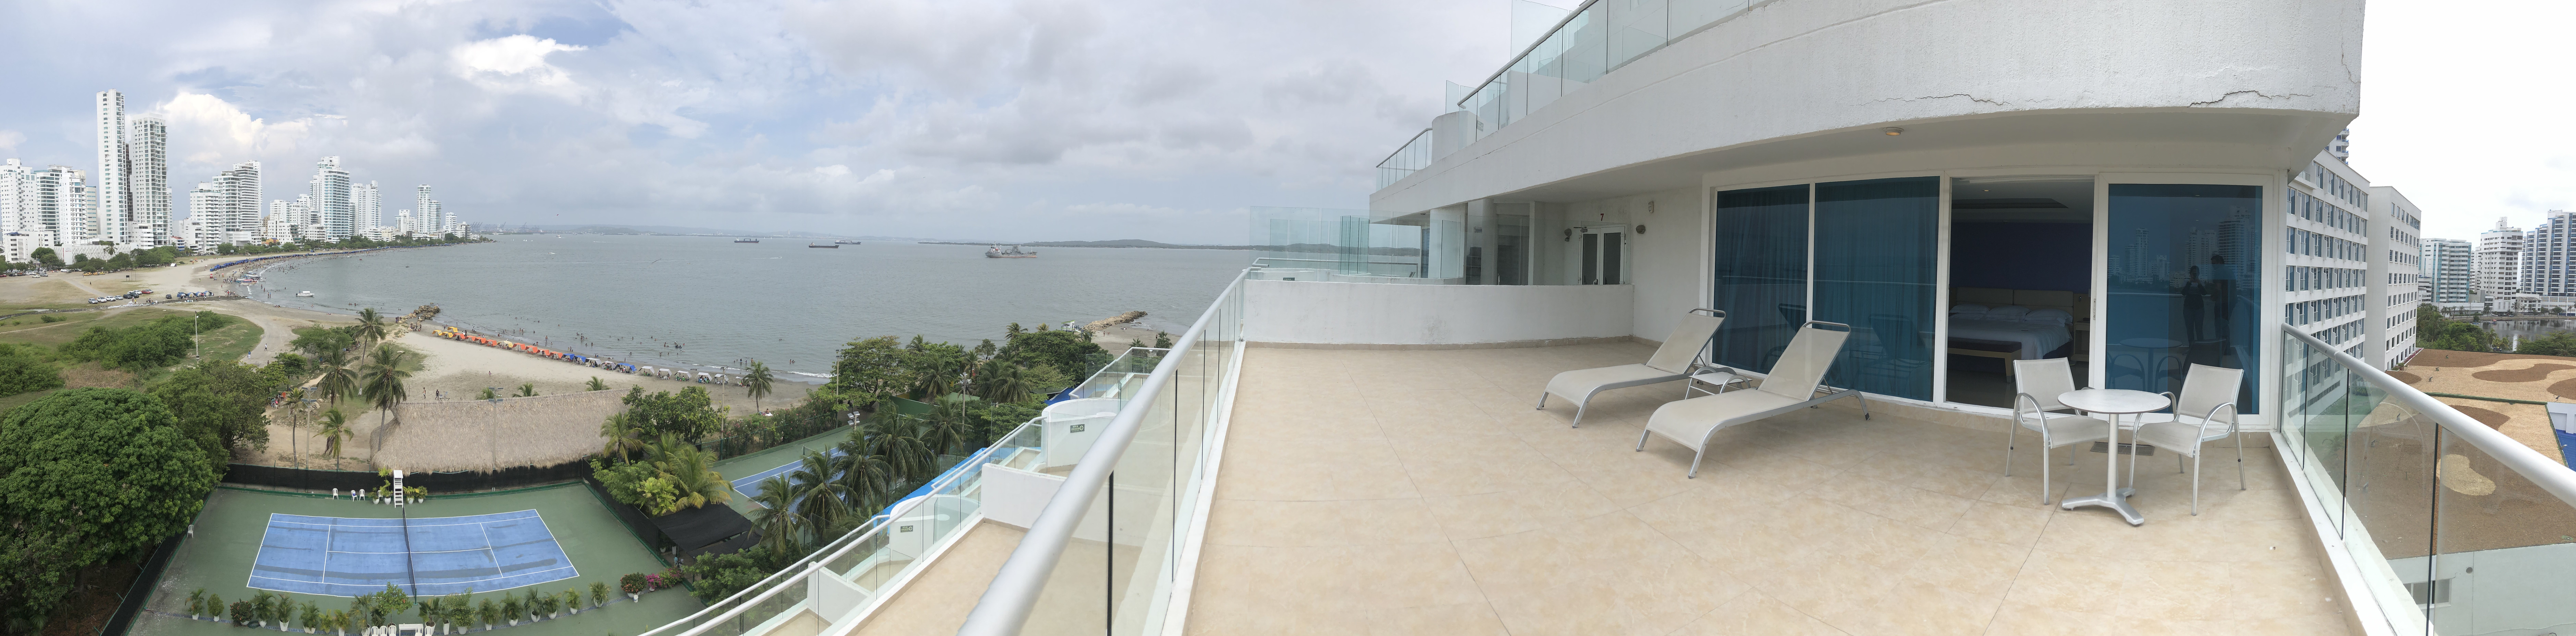 Review: Hilton Cartagena – a hidden Hilton gem!